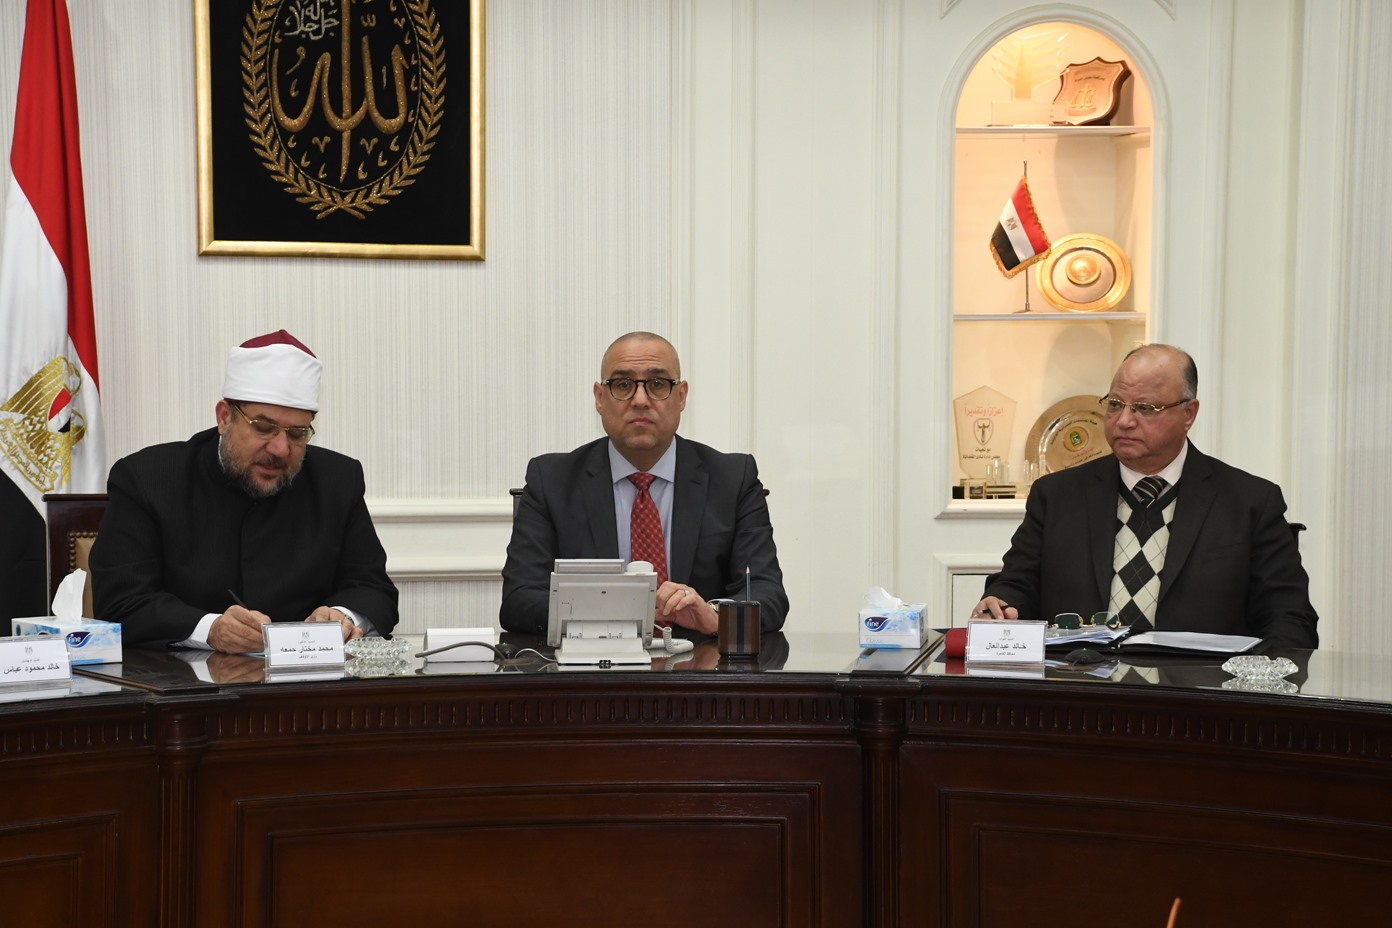   وزيرا الإسكان والأوقاف ومحافظ القاهرة يتابعون عدداً من المشروعات المشتركة لتطوير المناطق العشوائية بالعاصمة